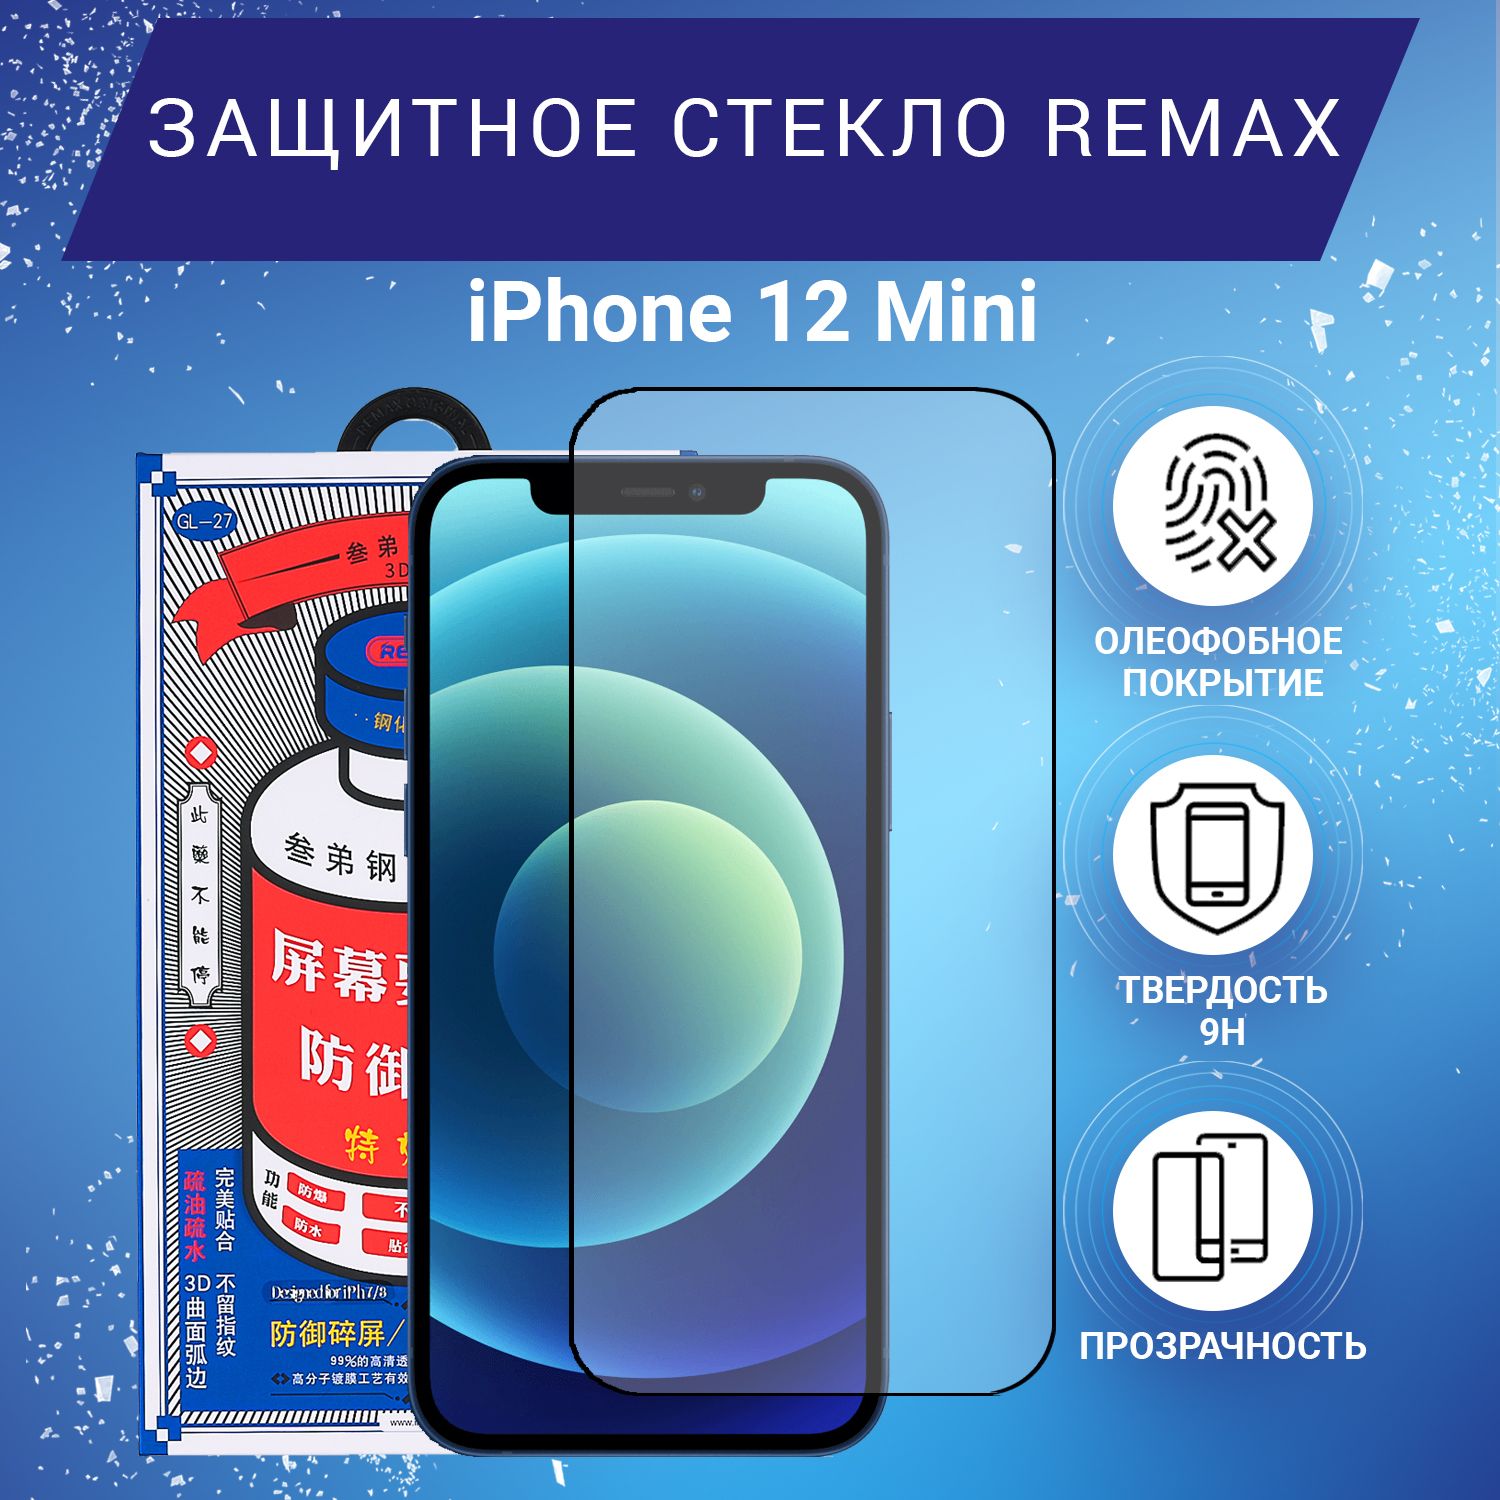 Стекло remax iphone 15. 3d и 2d стекло Remax для iphone 15 Pro Max.